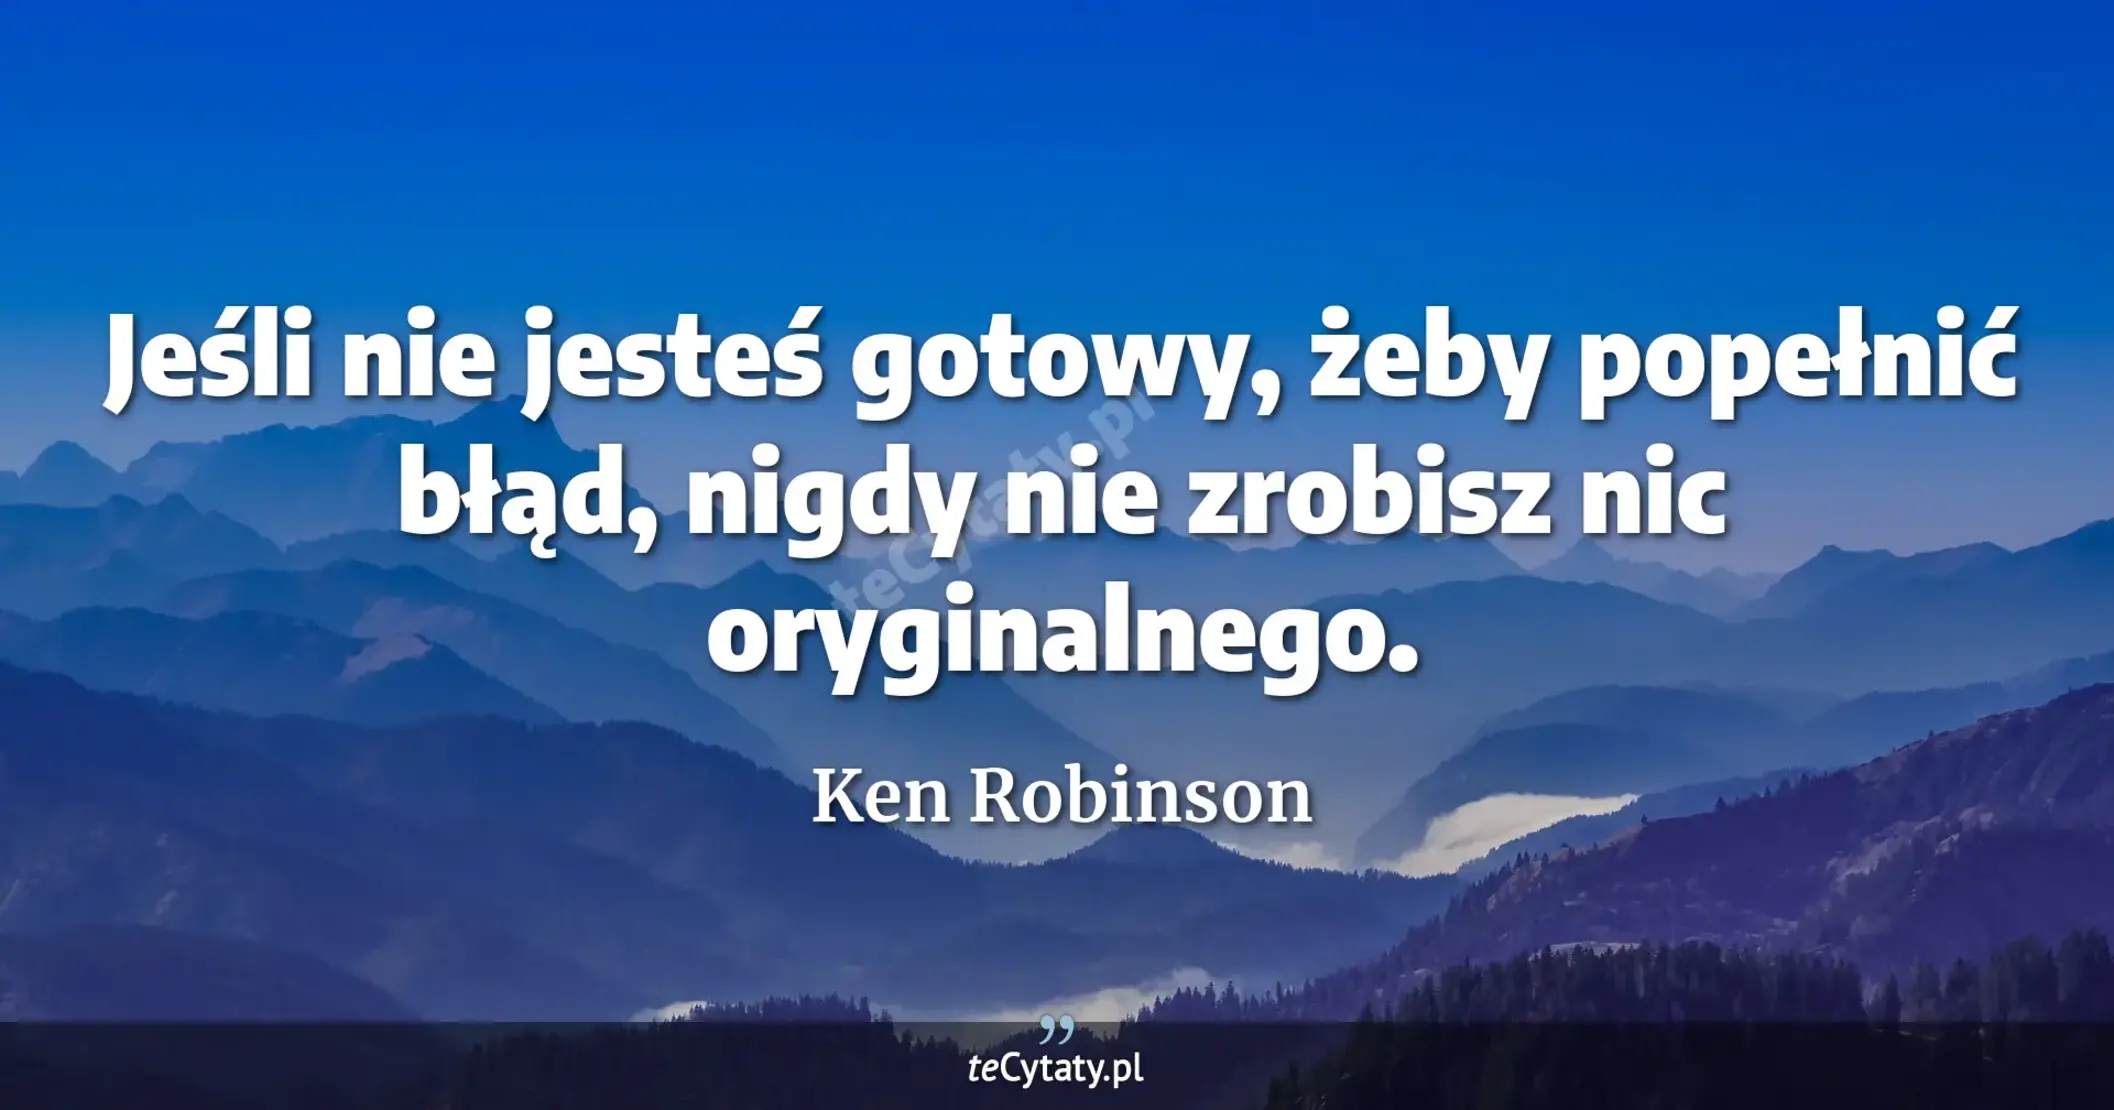 Jeśli nie jesteś gotowy, żeby popełnić błąd, nigdy nie zrobisz nic oryginalnego. - Ken Robinson